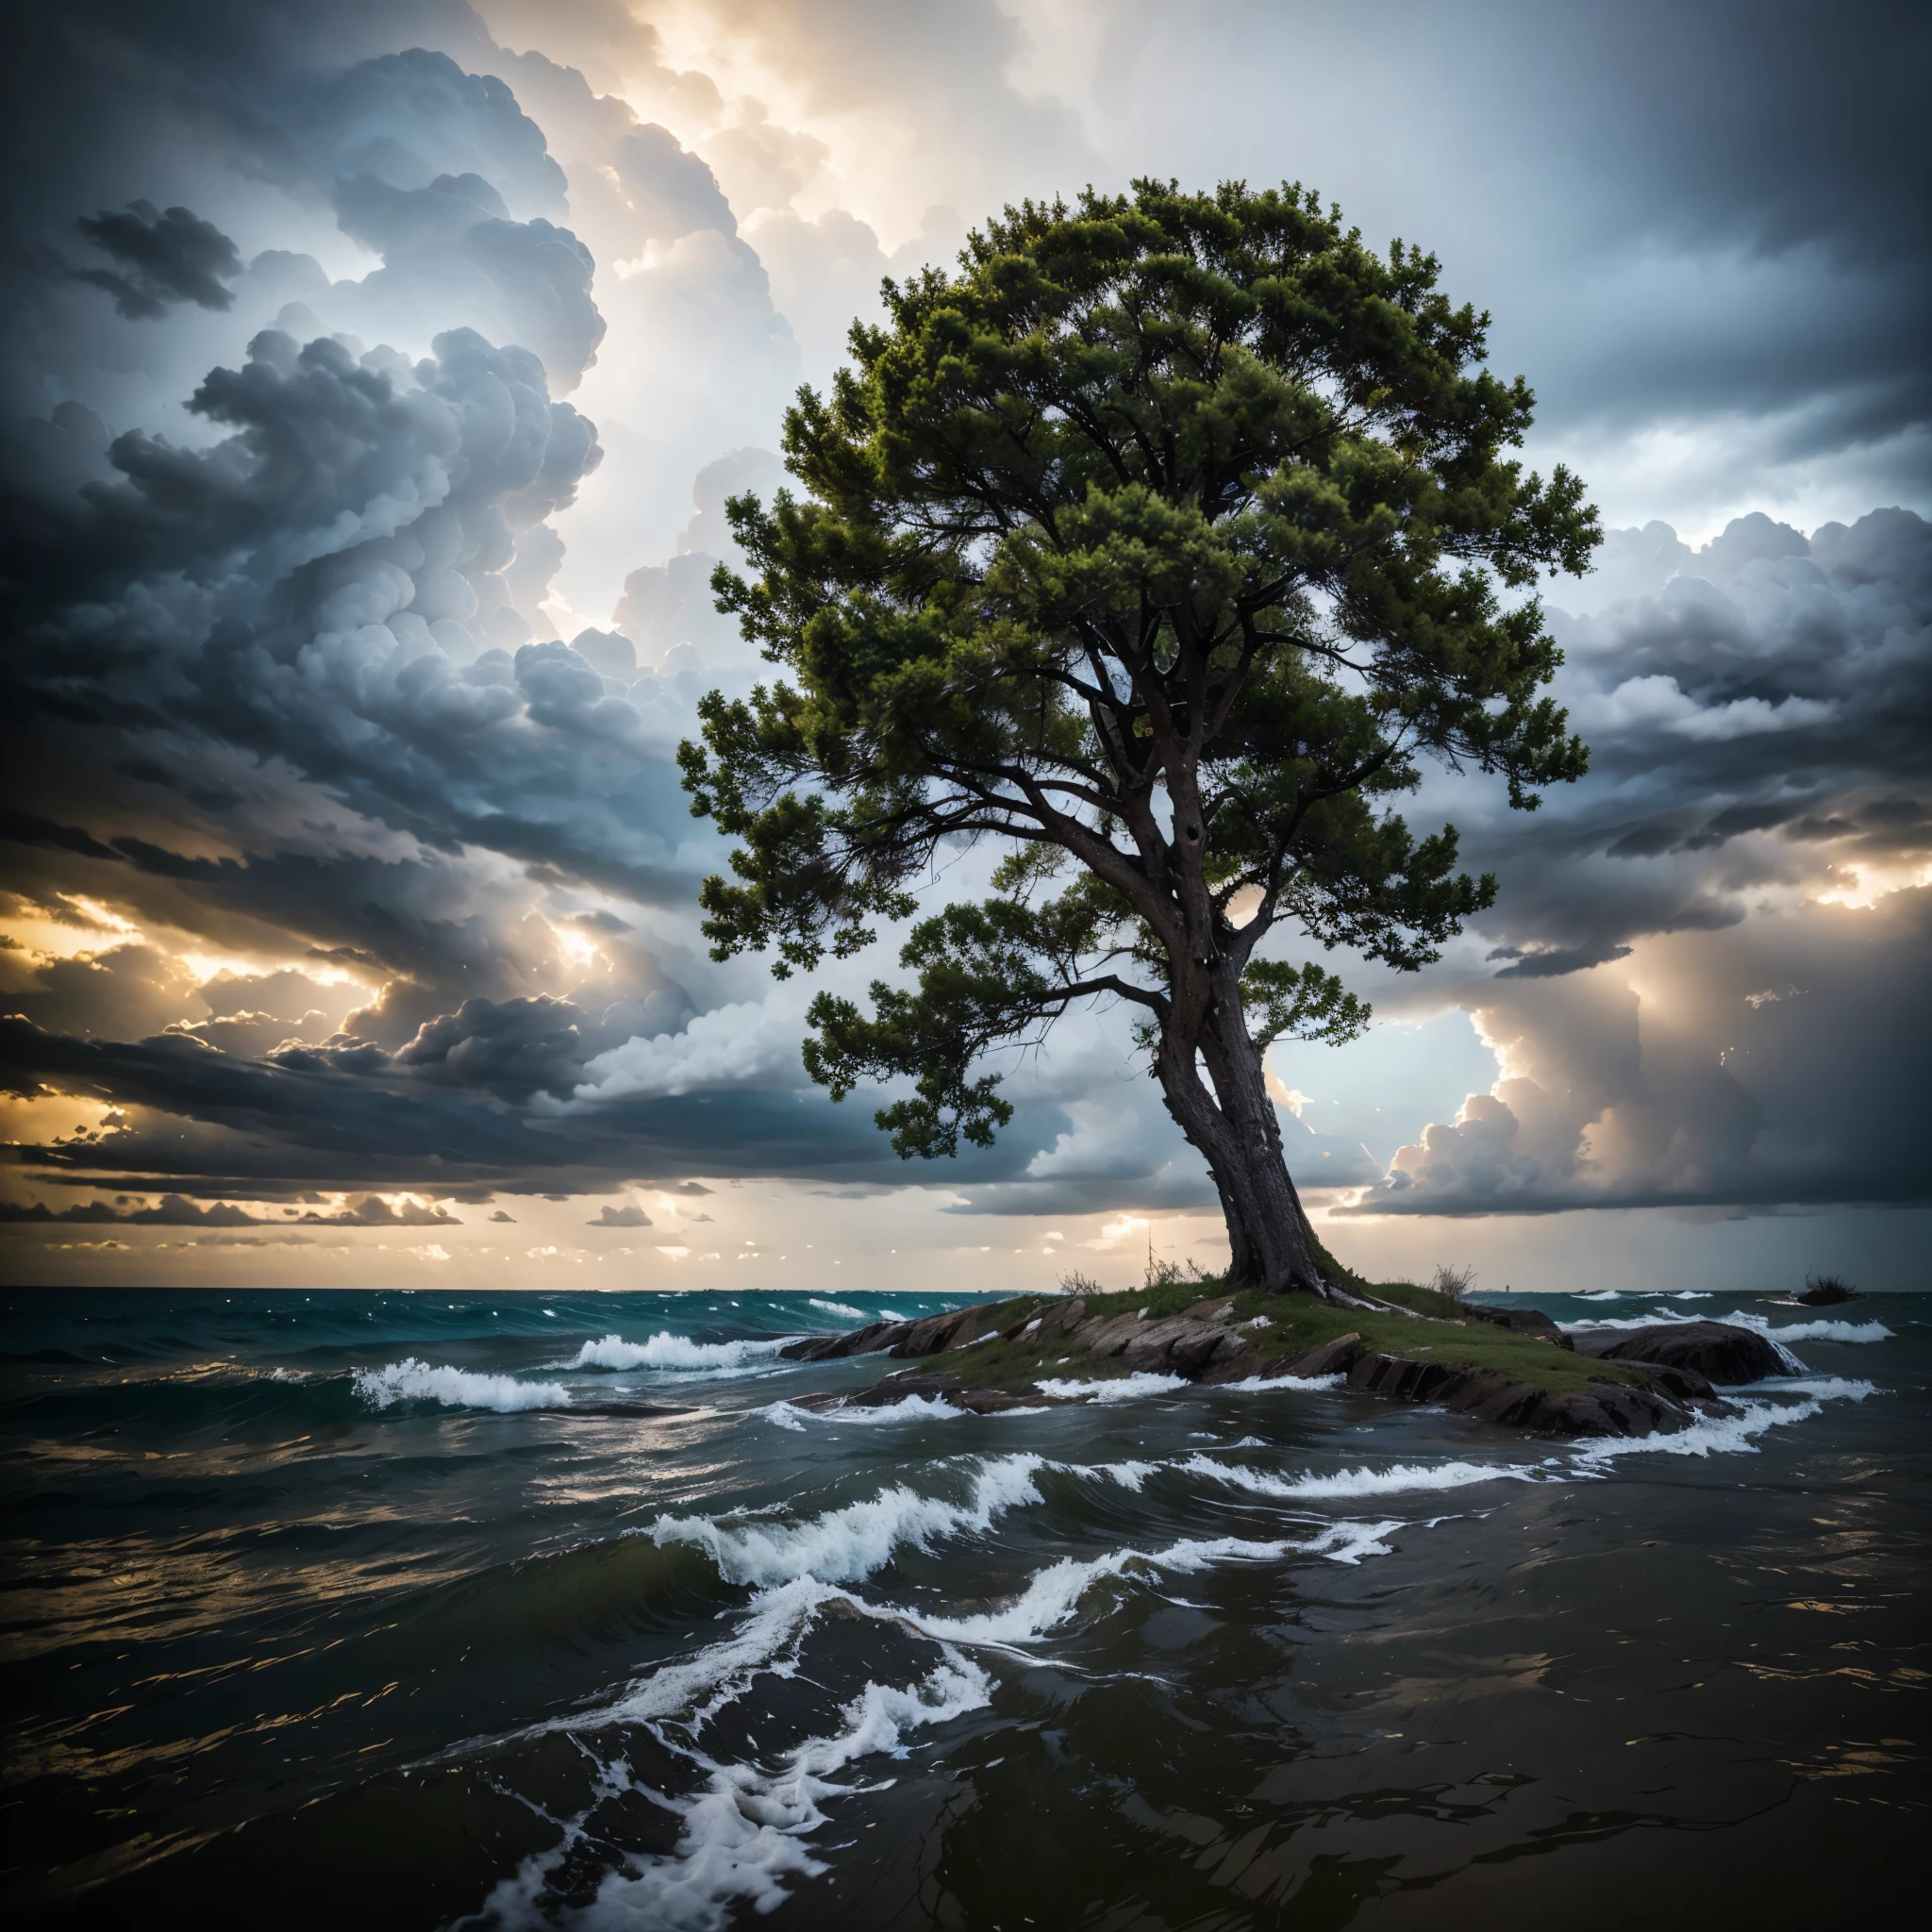 Un árbol resiliente en medio de las tormentas, destacando la resiliencia que surge de los desafíos.